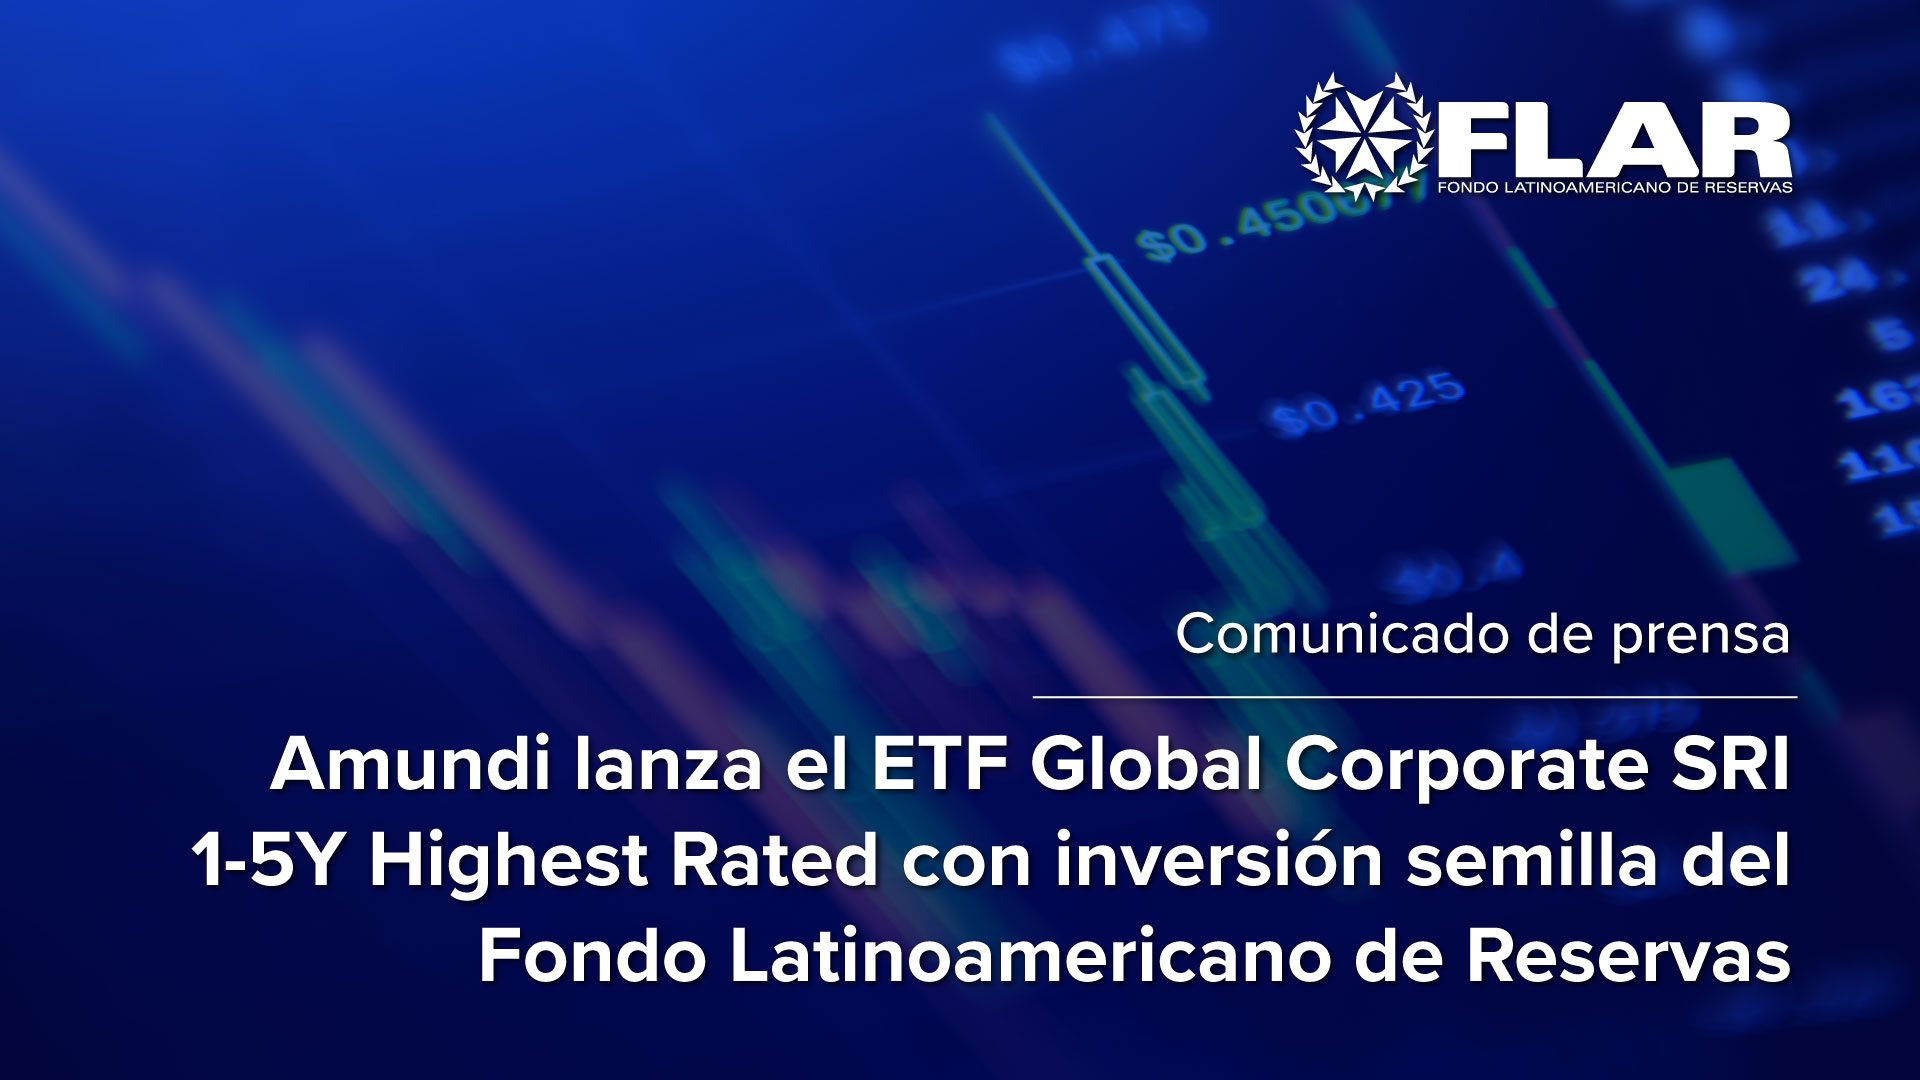 Comunicado de prensa: Amundi lanza el ETF Global Corporate SRI 1-5Y Highest Rated con inversión semilla del Fondo Latinoamericano de Reservas